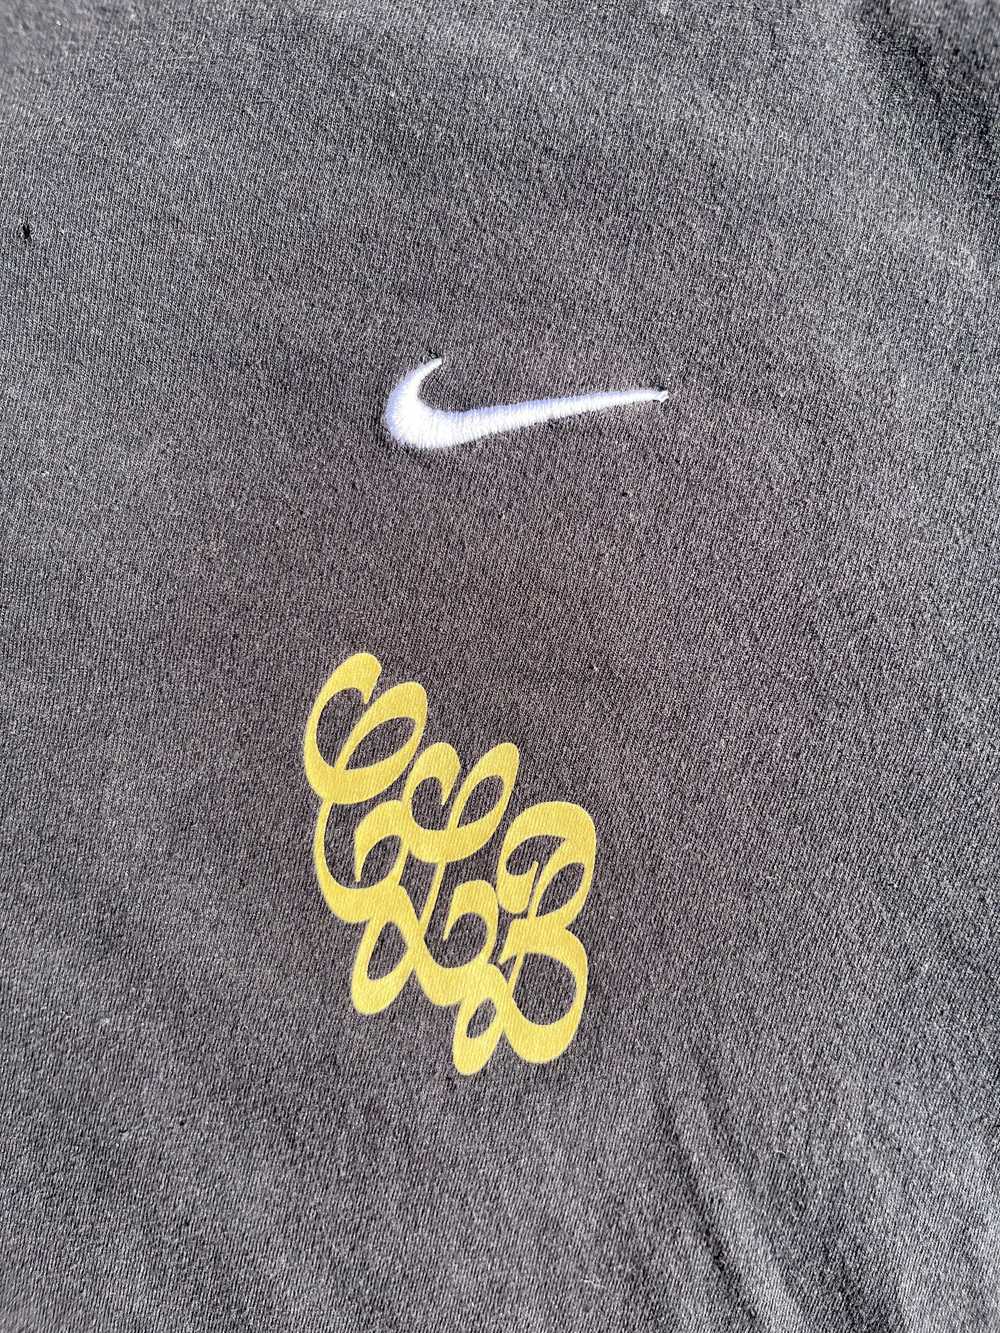 Drake × Nike Nike x Drake Certified Lover Boy Ros… - image 4